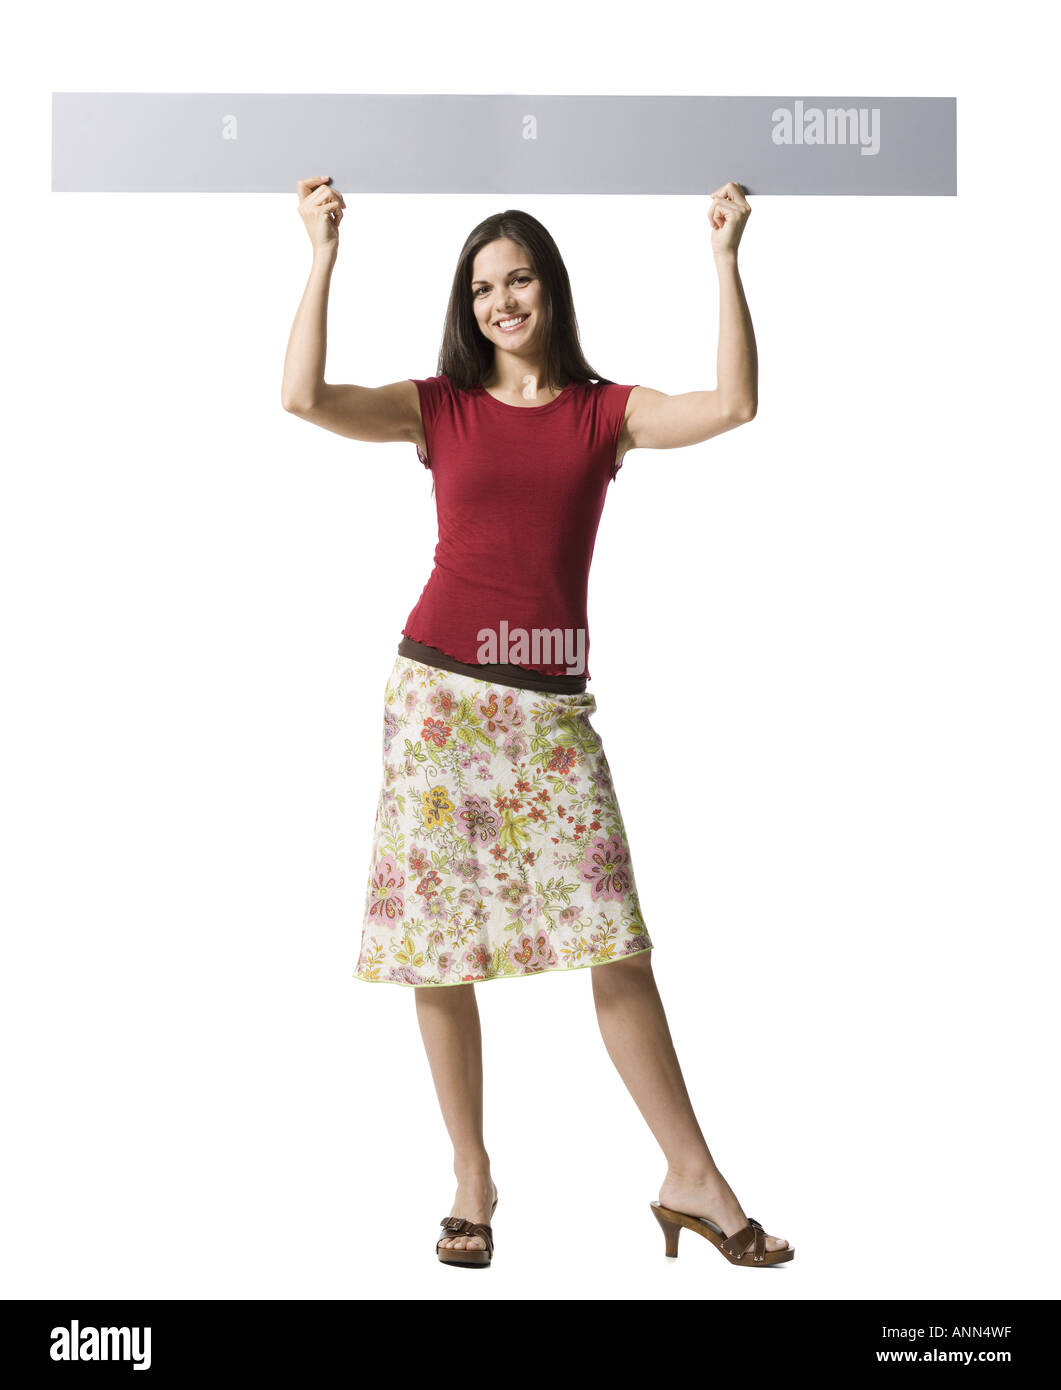 Ritratto di una donna tenendo in mano un cartello bianco Foto Stock